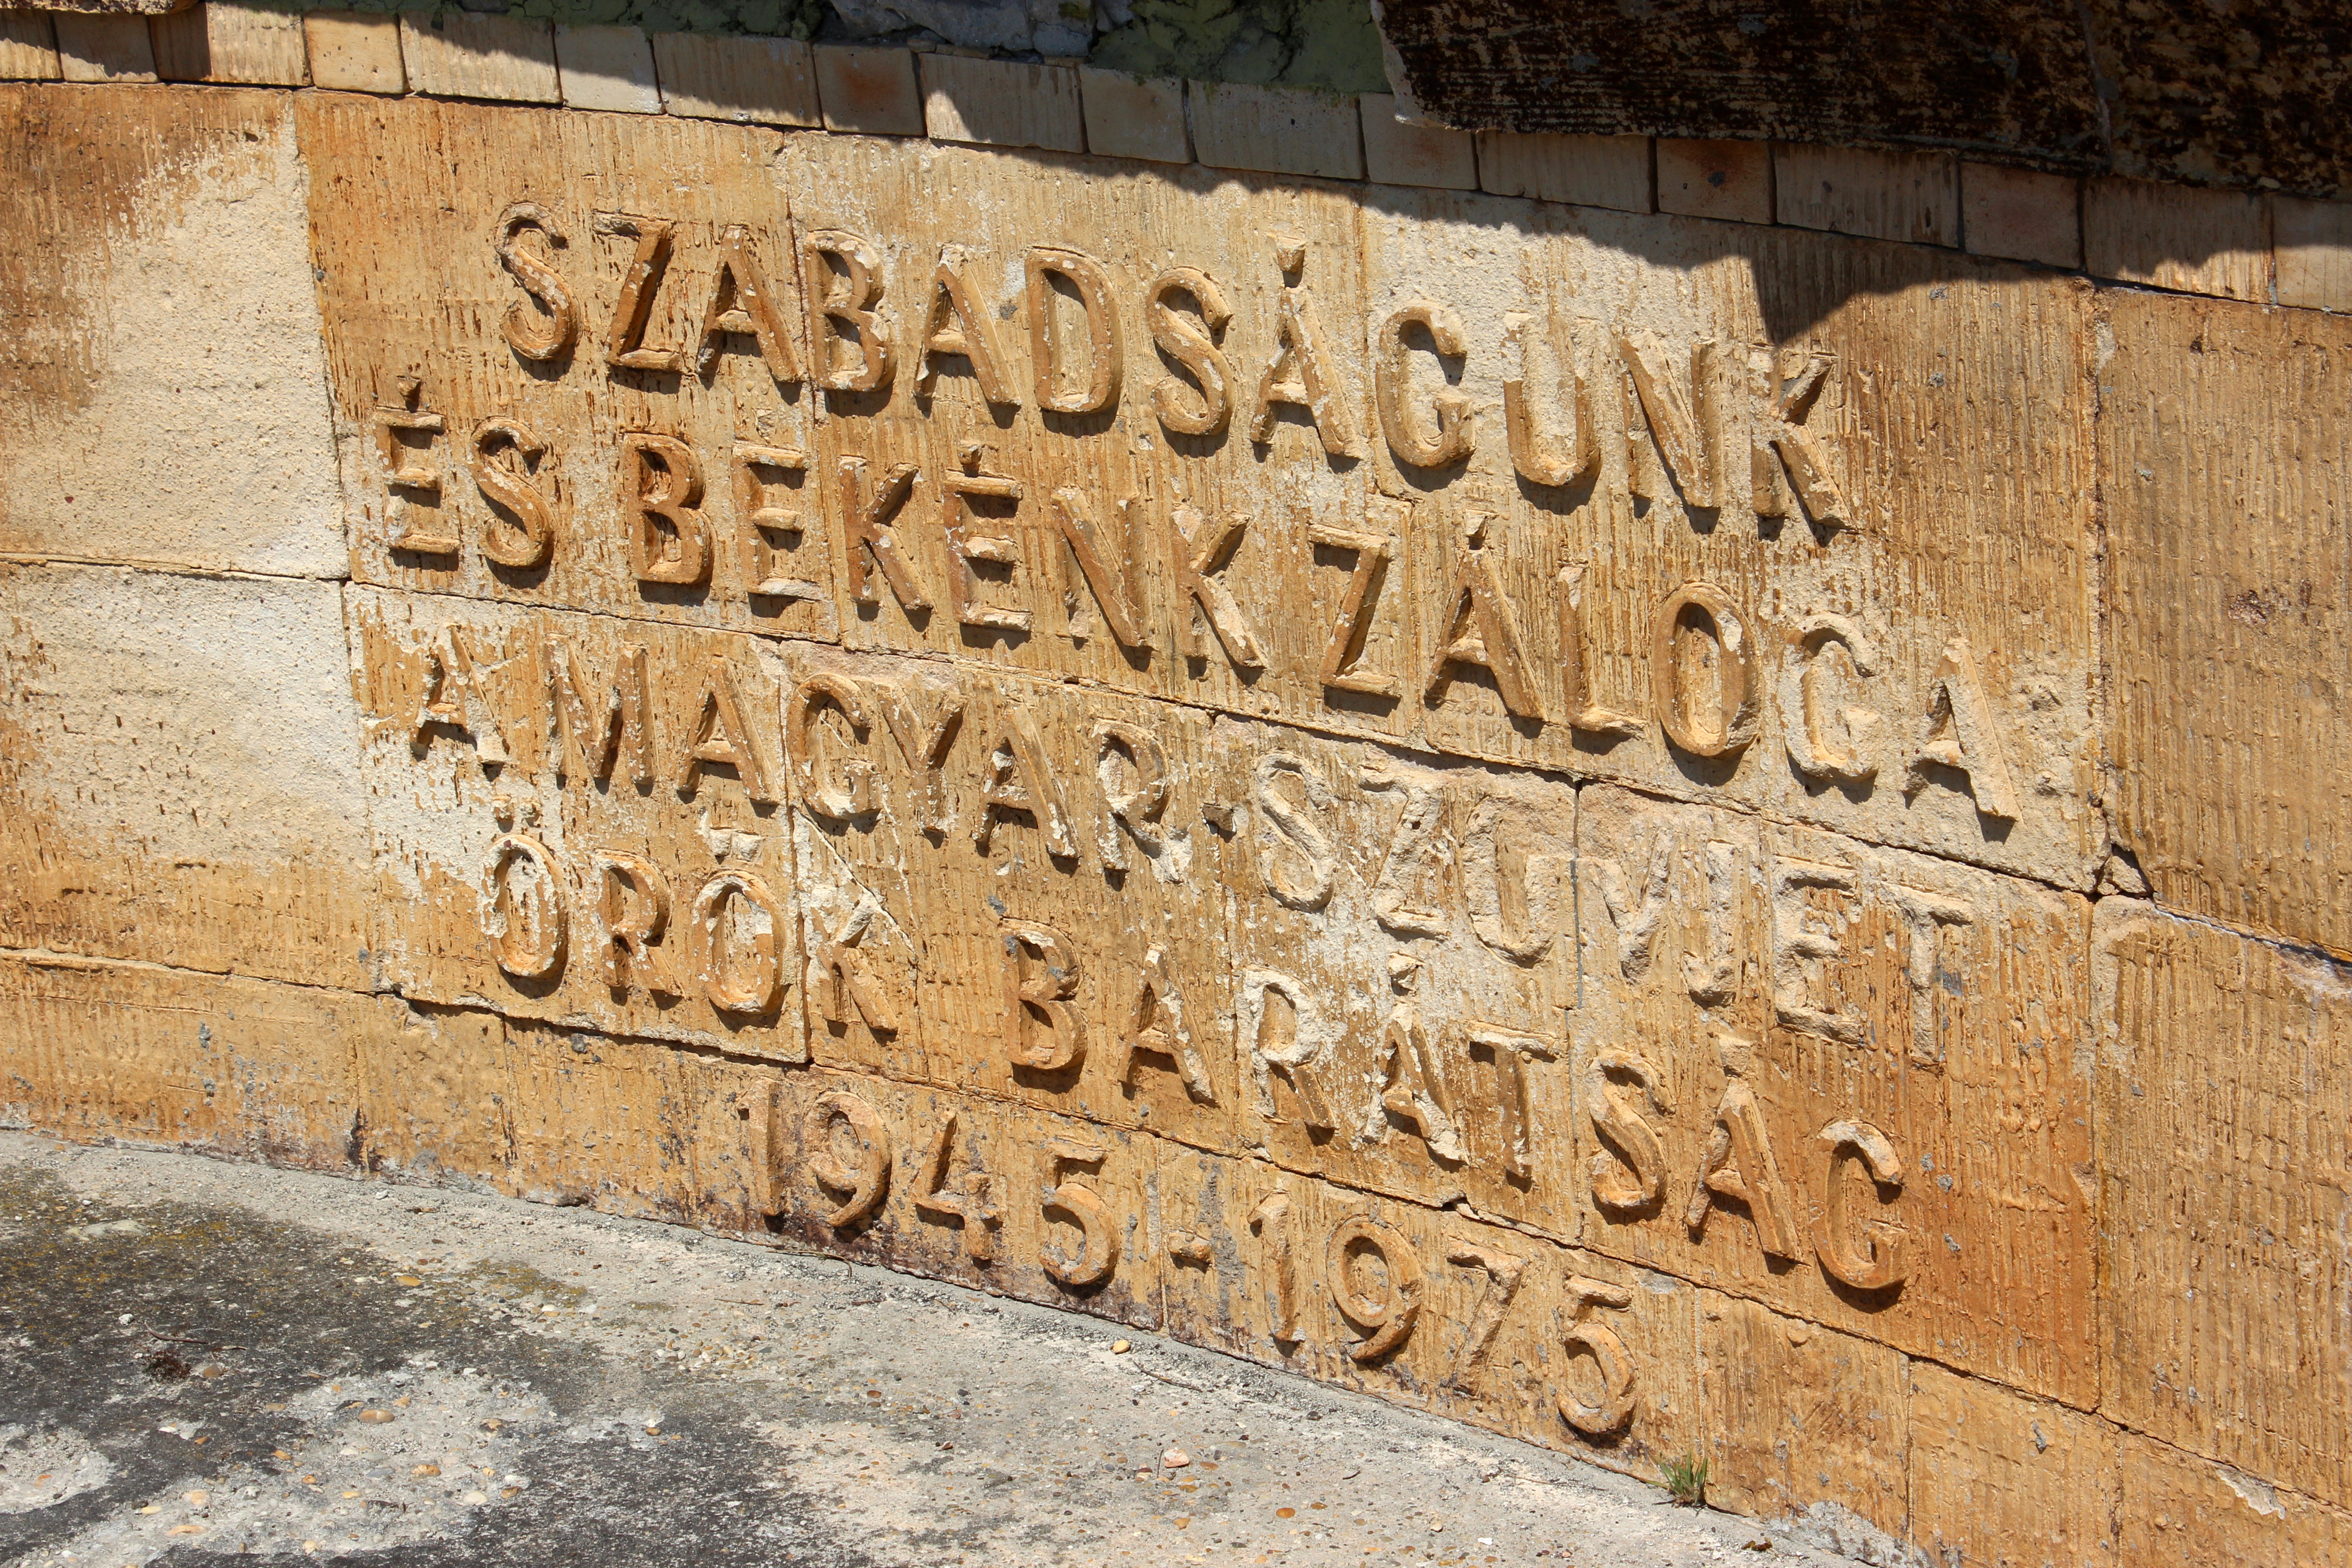 Az elemek nem kegyelmeznek a nagytétényi fennsíkon álló Memento Parknak. Itt az egyik szovjet-magyar barátsági emlékmű megkopott felirata.